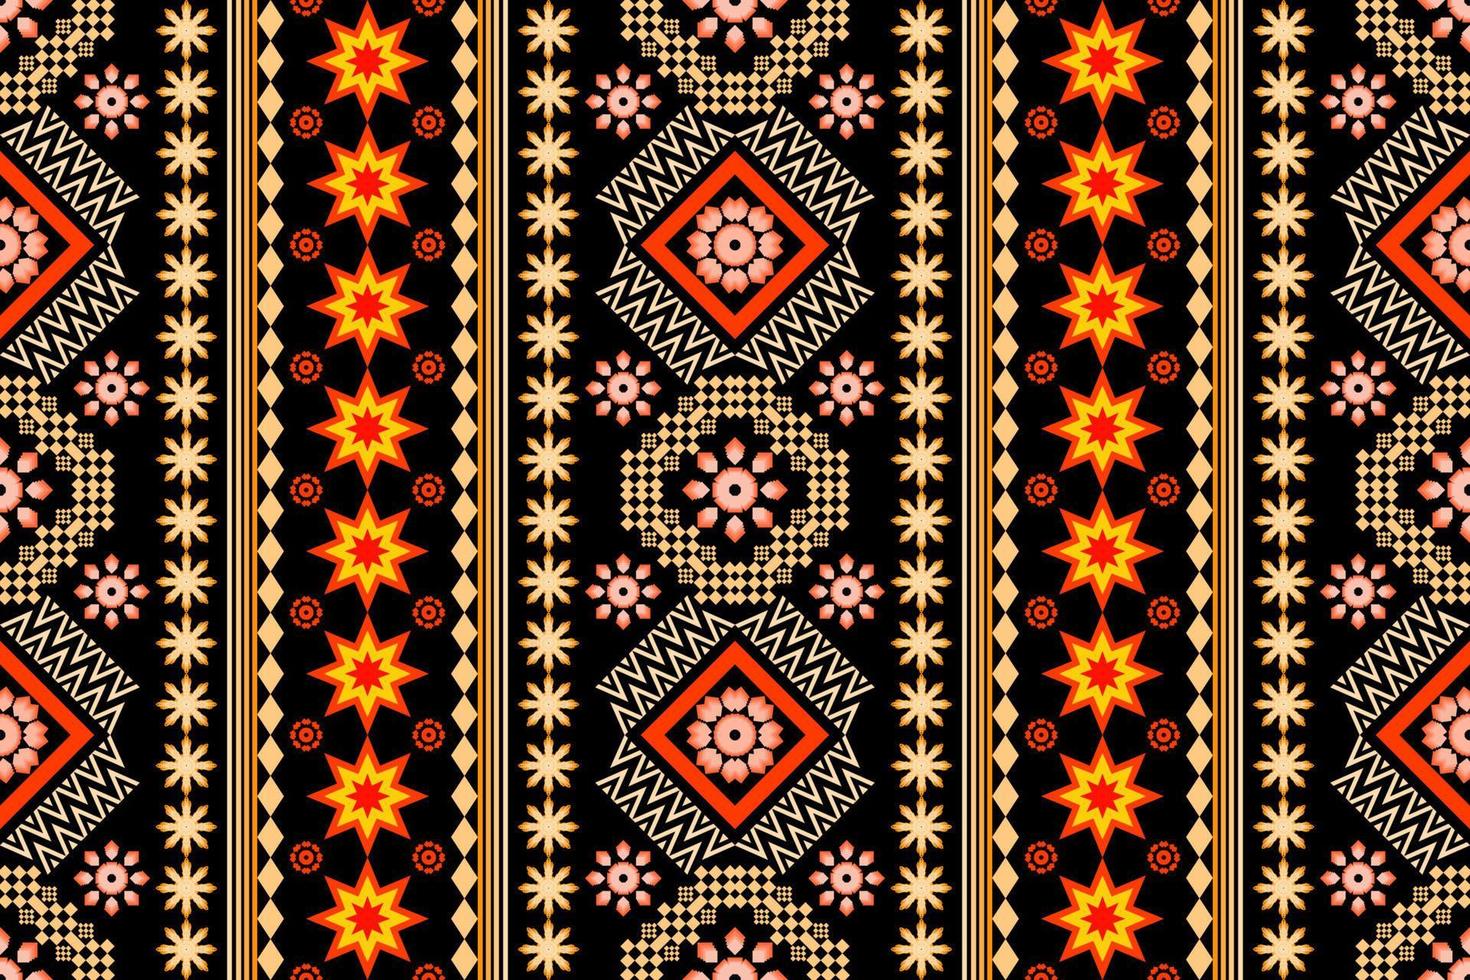 geometrisches ethnisches orientalisches traditionelles kunstmuster. figur stammesstickerei style.design für ethnischen hintergrund, tapete, kleidung, verpackung, stoff, element, sarong, vektorillustration vektor